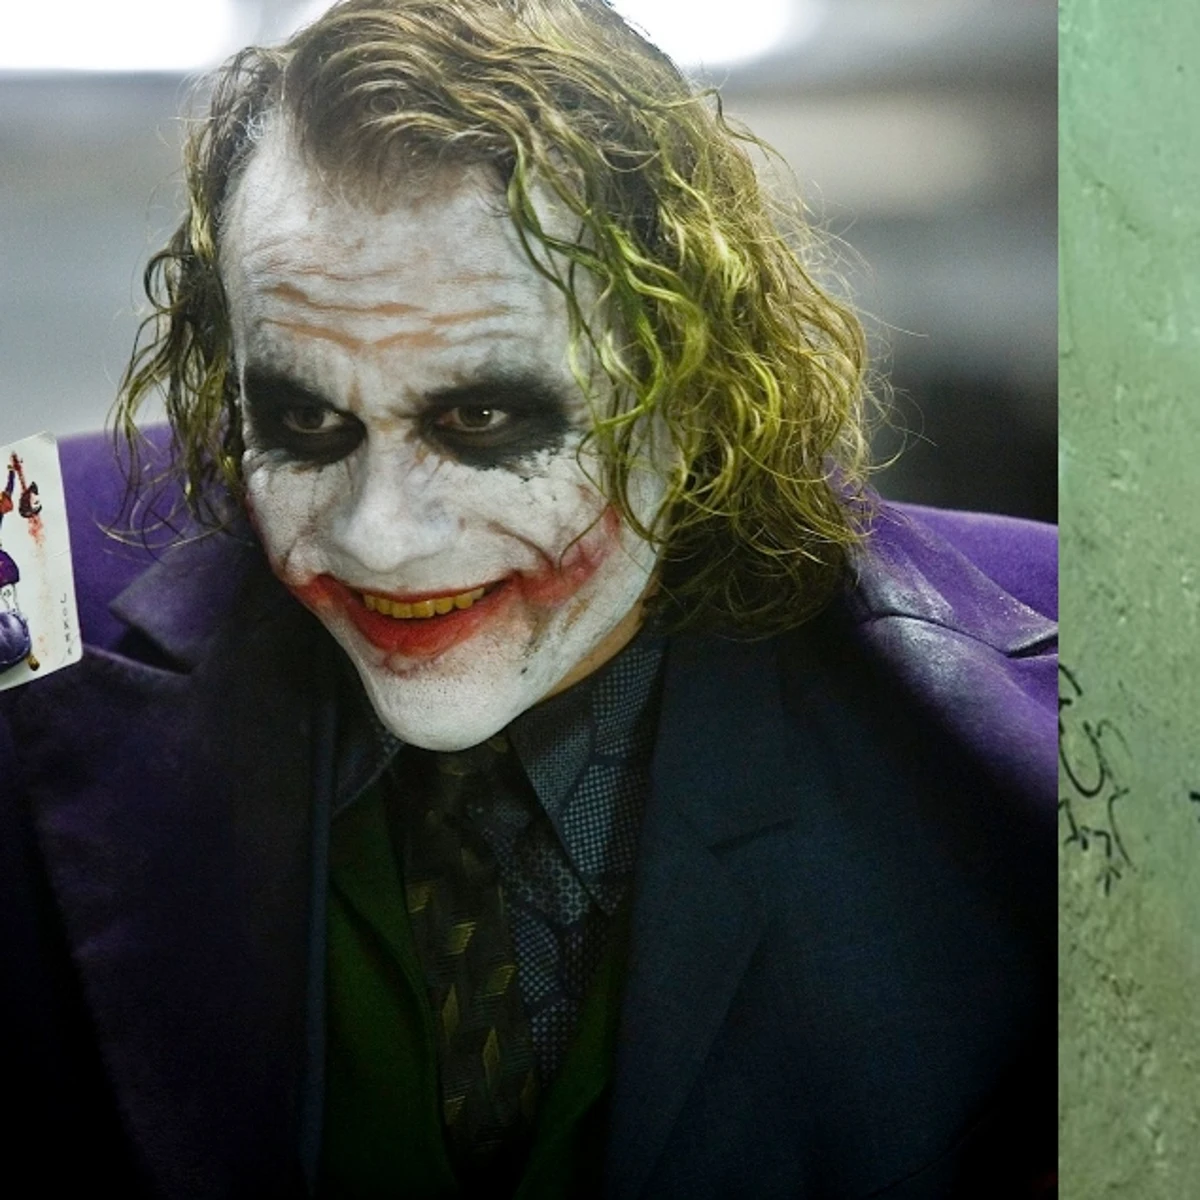 Pendiente comida Enriquecer Por qué el traje de Joaquin Phoenix en 'Joker' es rojo y no morado?